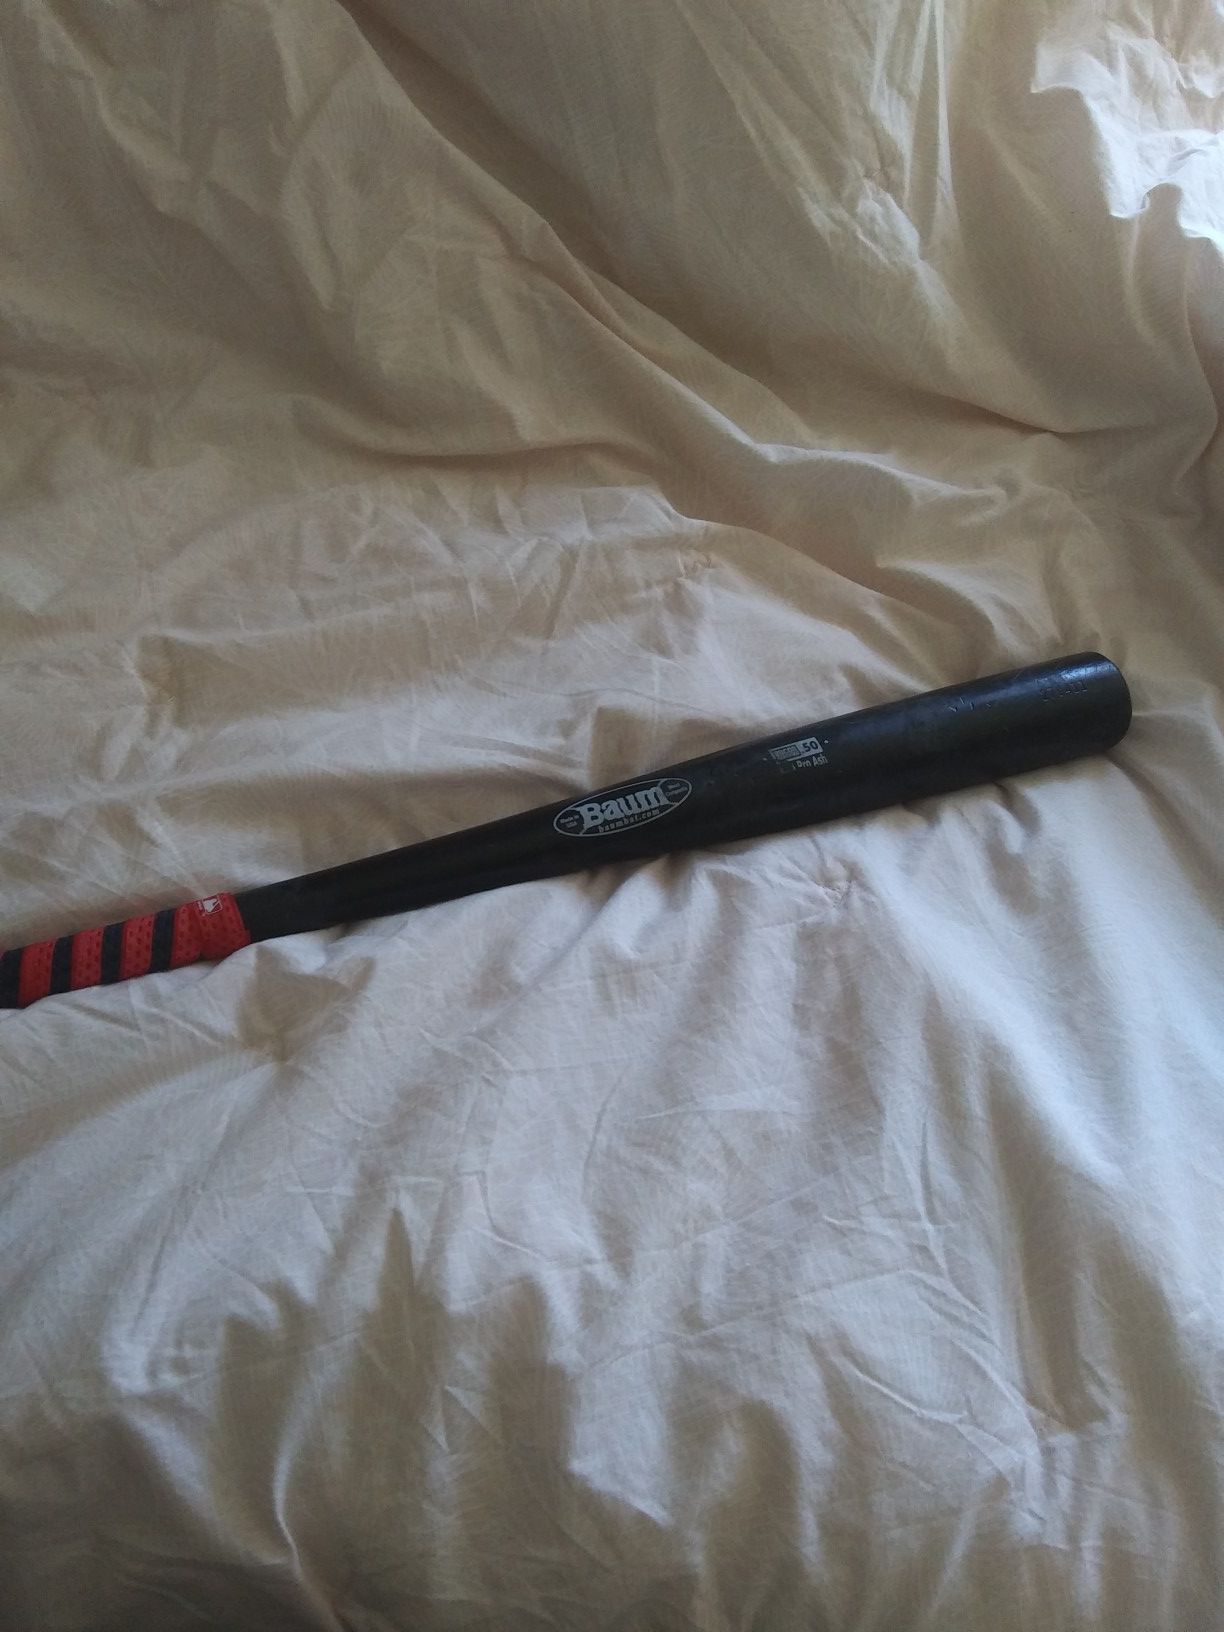 33" Baum baseball bat